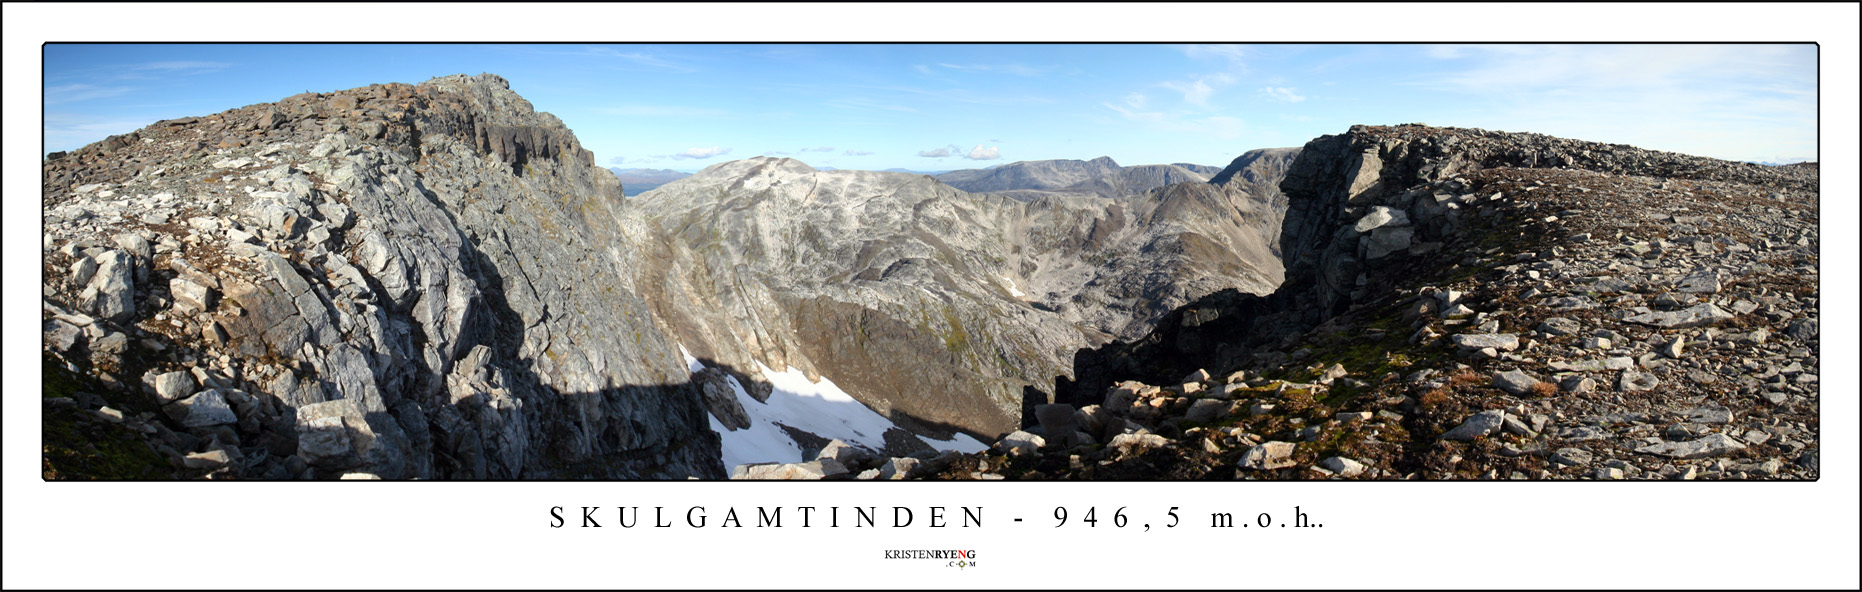 Panorama-Skulgamtinden1.jpg - Skulgamtinden - 946,5 moh.